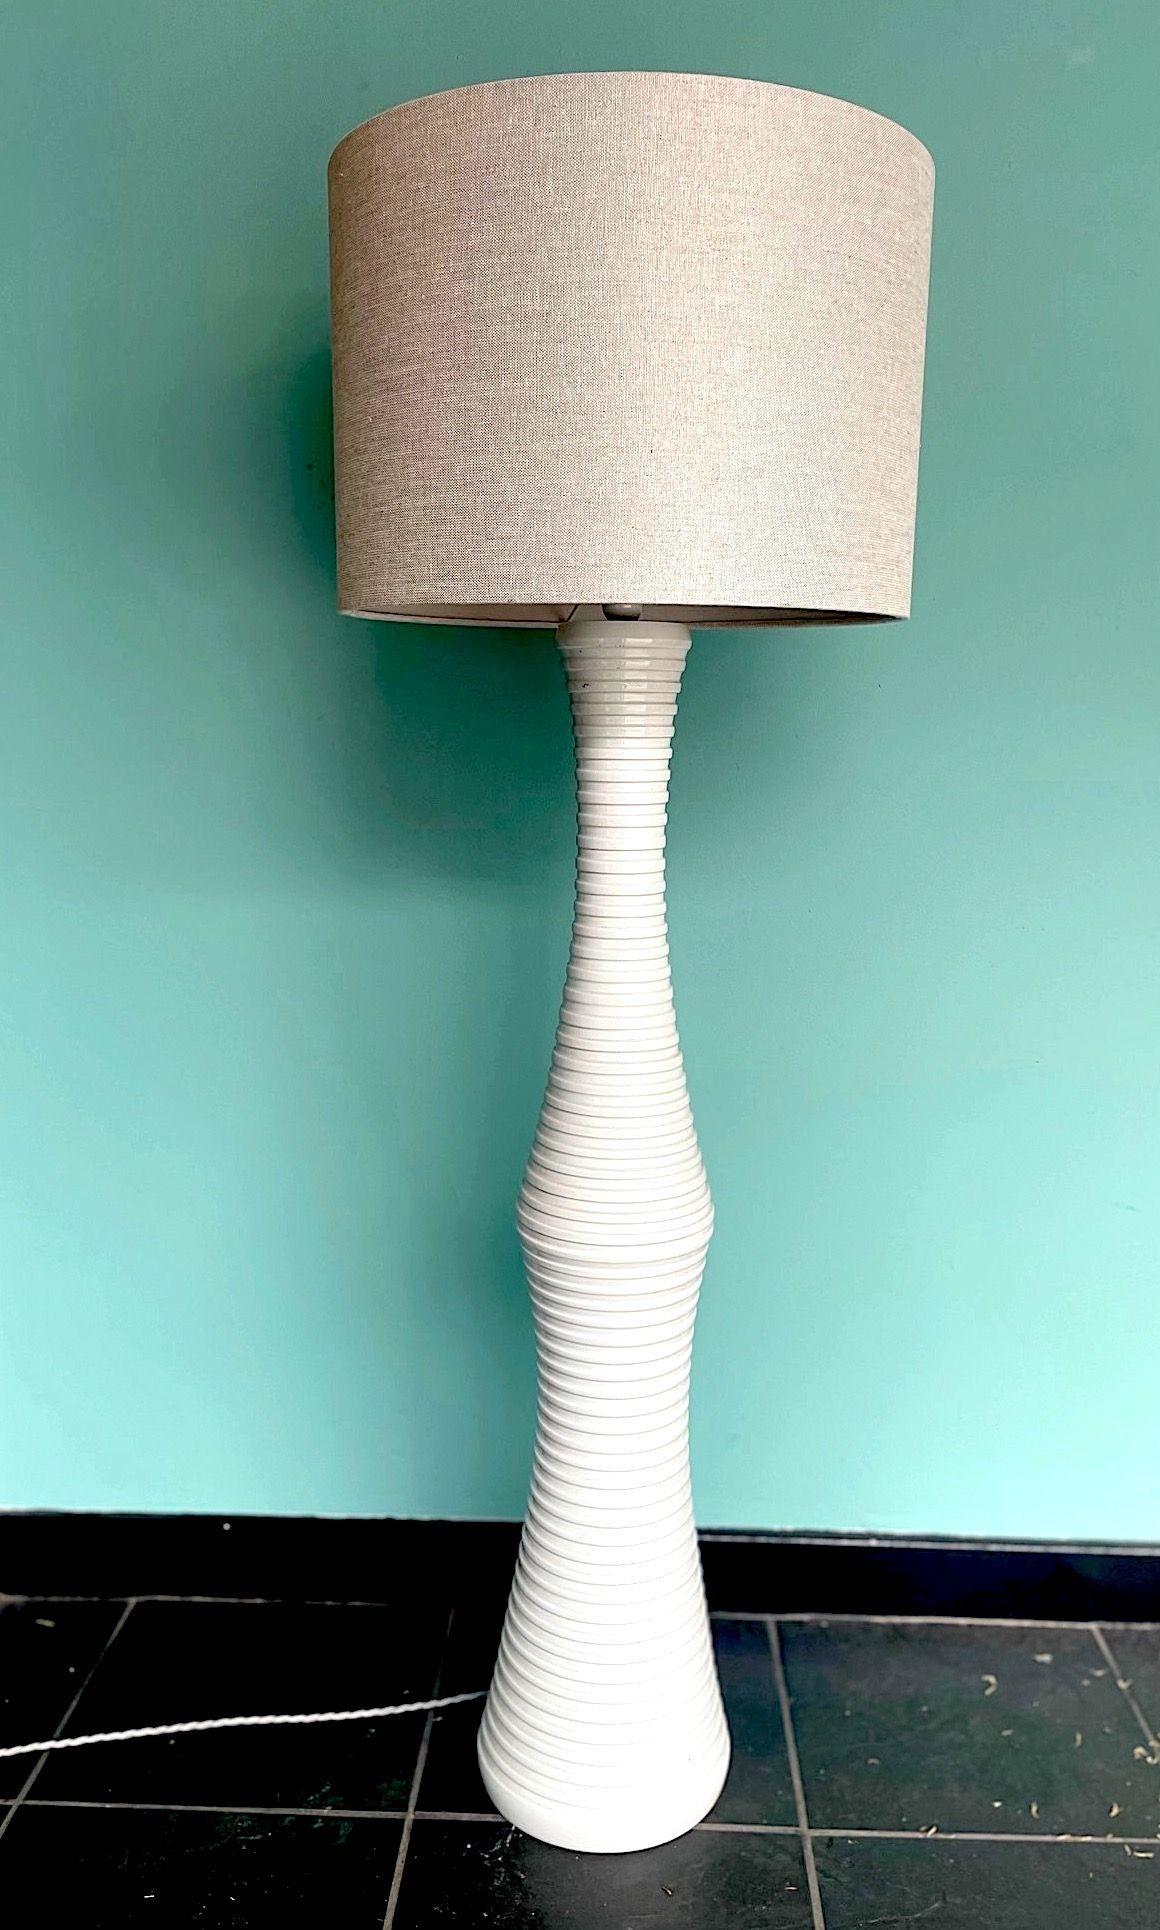 Grand lampadaire italien des années 1970 en céramique blanche nervurée avec abat-jour en lin naturel. Recâblage avec cordon flexible et interrupteur à pied en argent antique. 
Il y a aussi une autre lampe assortie en blanc et argent - voir les trois